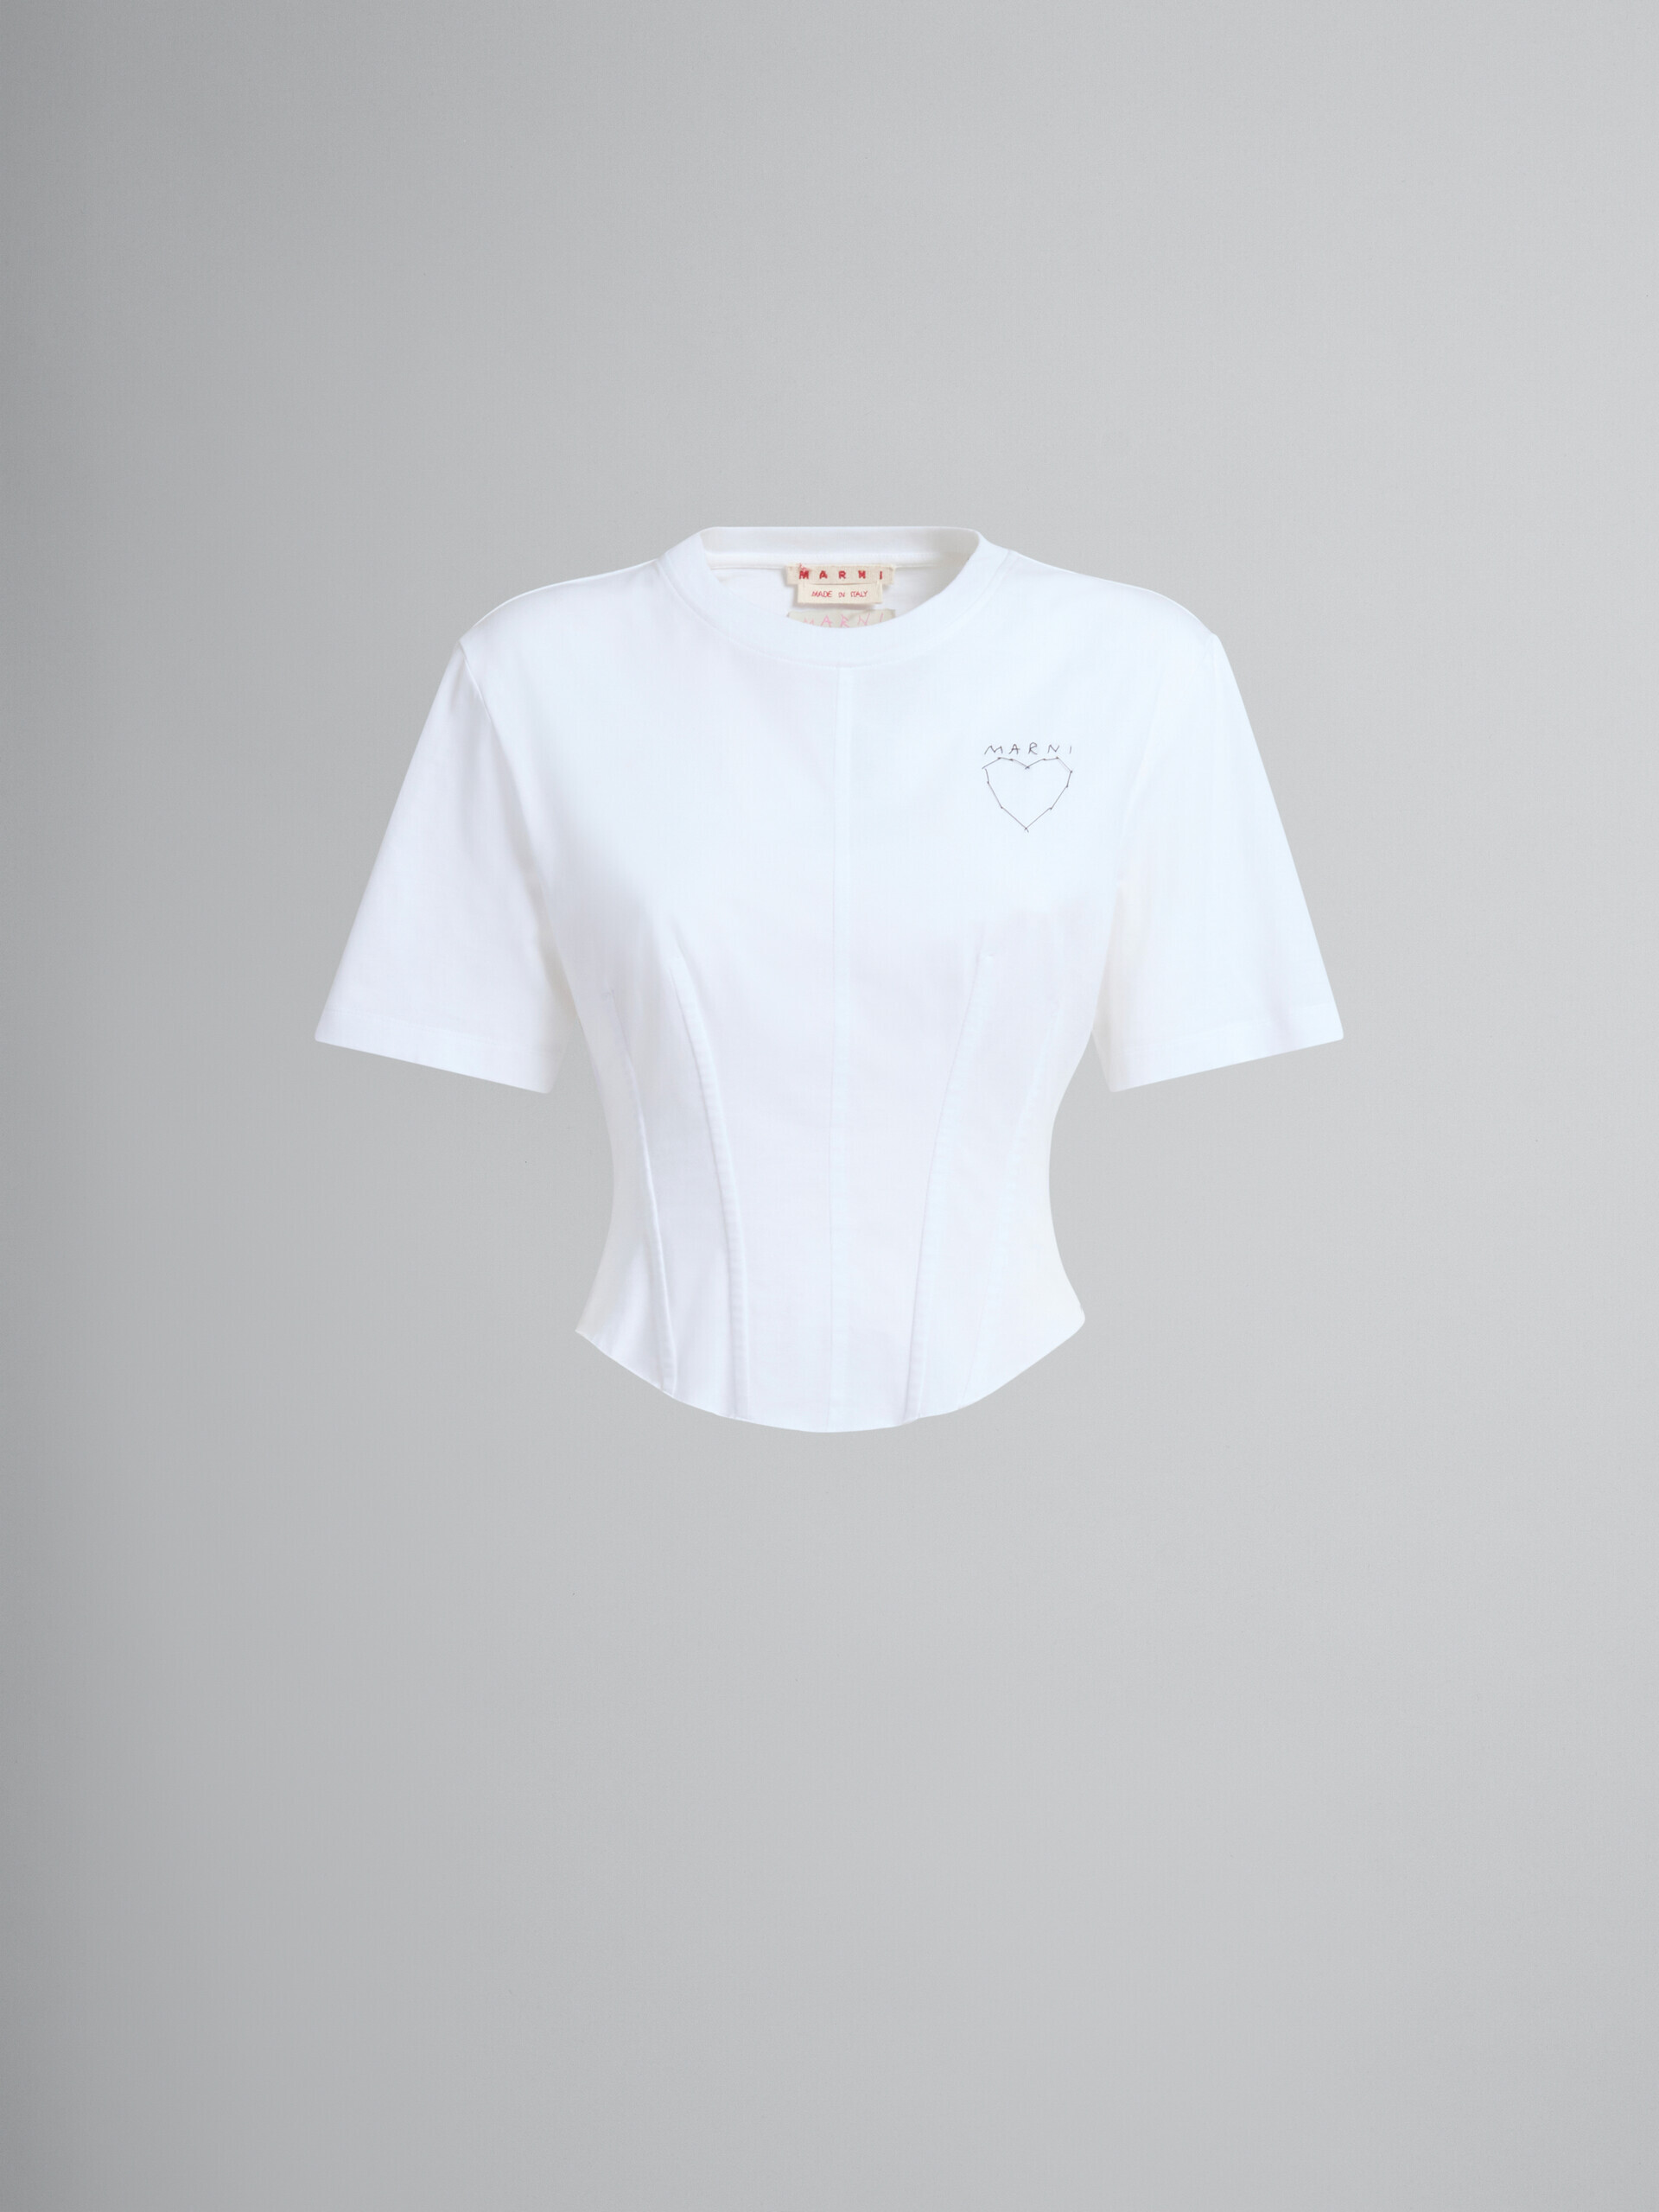 Camiseta bustier de algodón orgánico blanca - Camisetas - Image 2